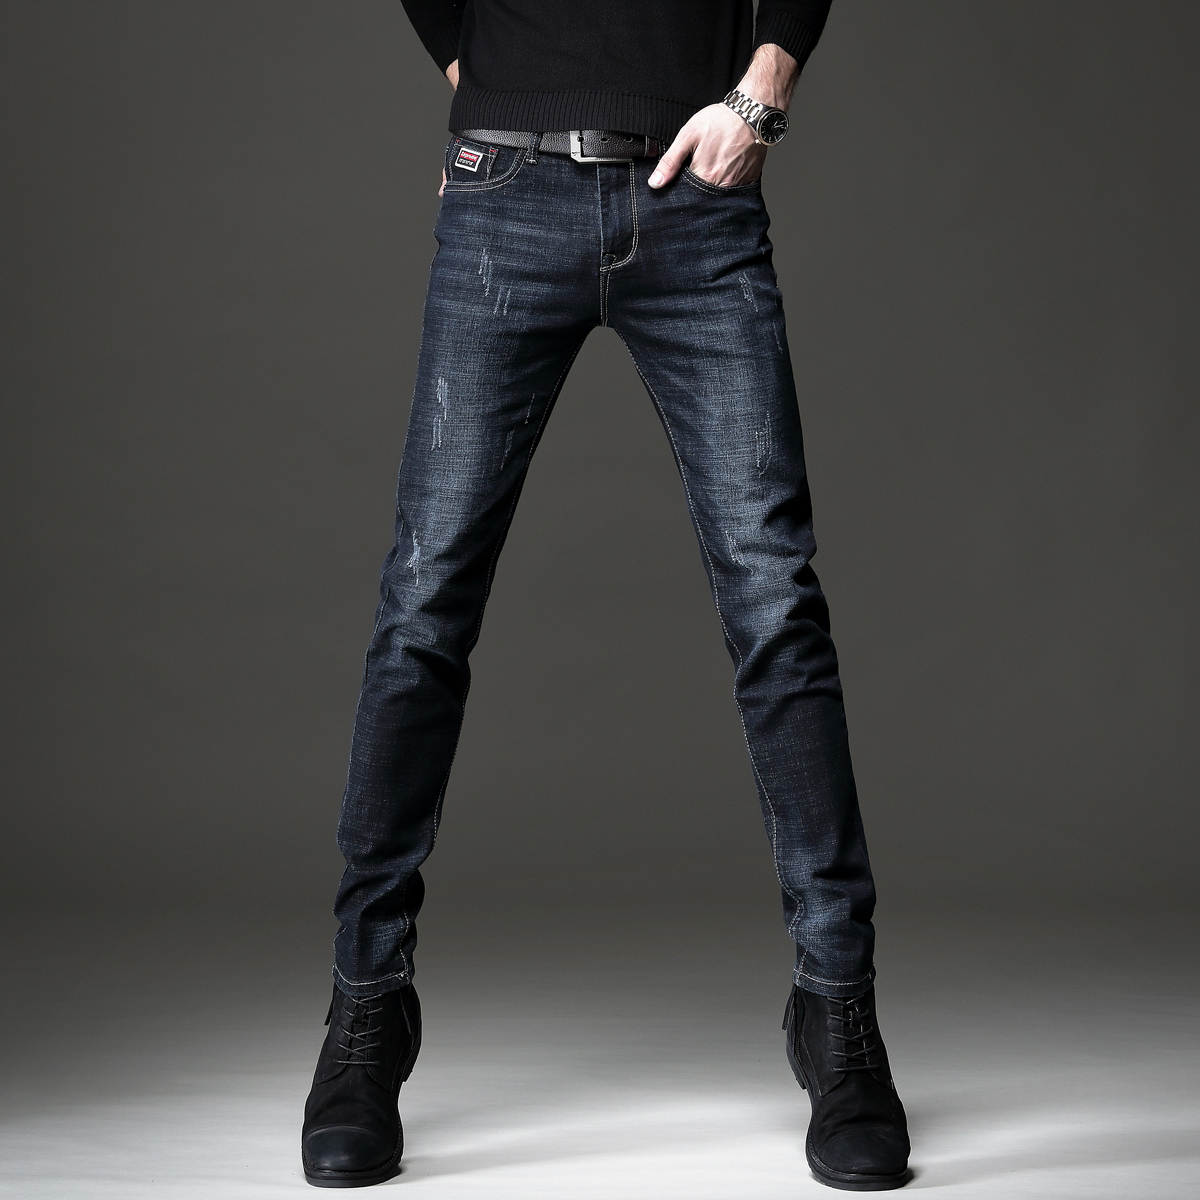 贵色春季黑蓝色牛仔裤男潮牌弹力修身小脚新款潮流韩版男士长裤子